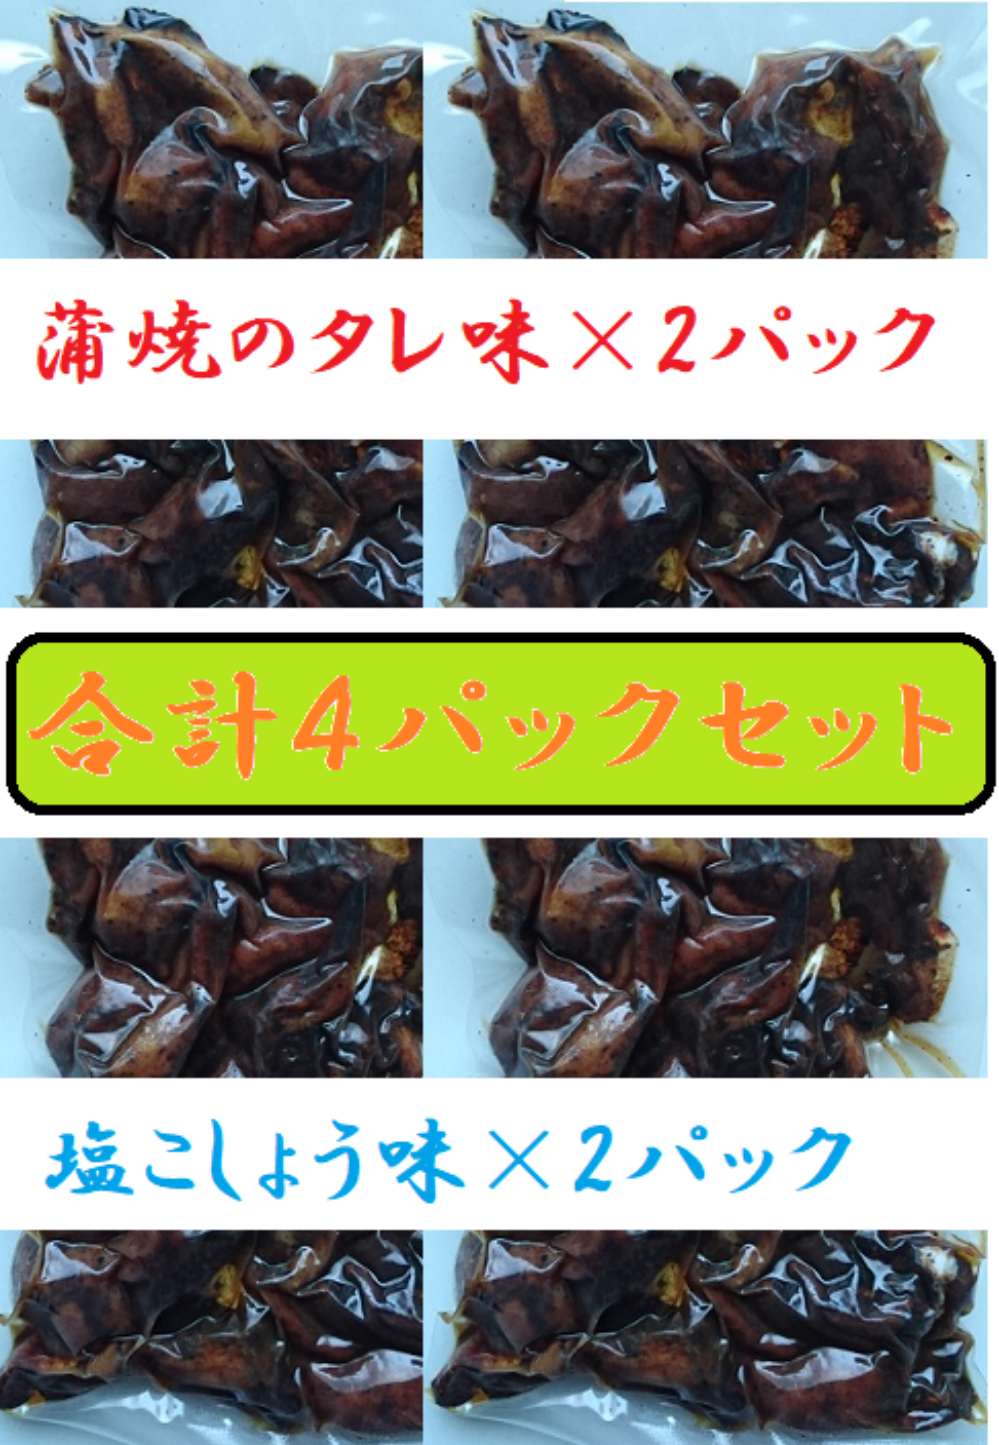 絶品 珍味◎肝焼き 100g×3 おつまみ 鰻蒲焼 スルメ A 魚介類(加工食品)